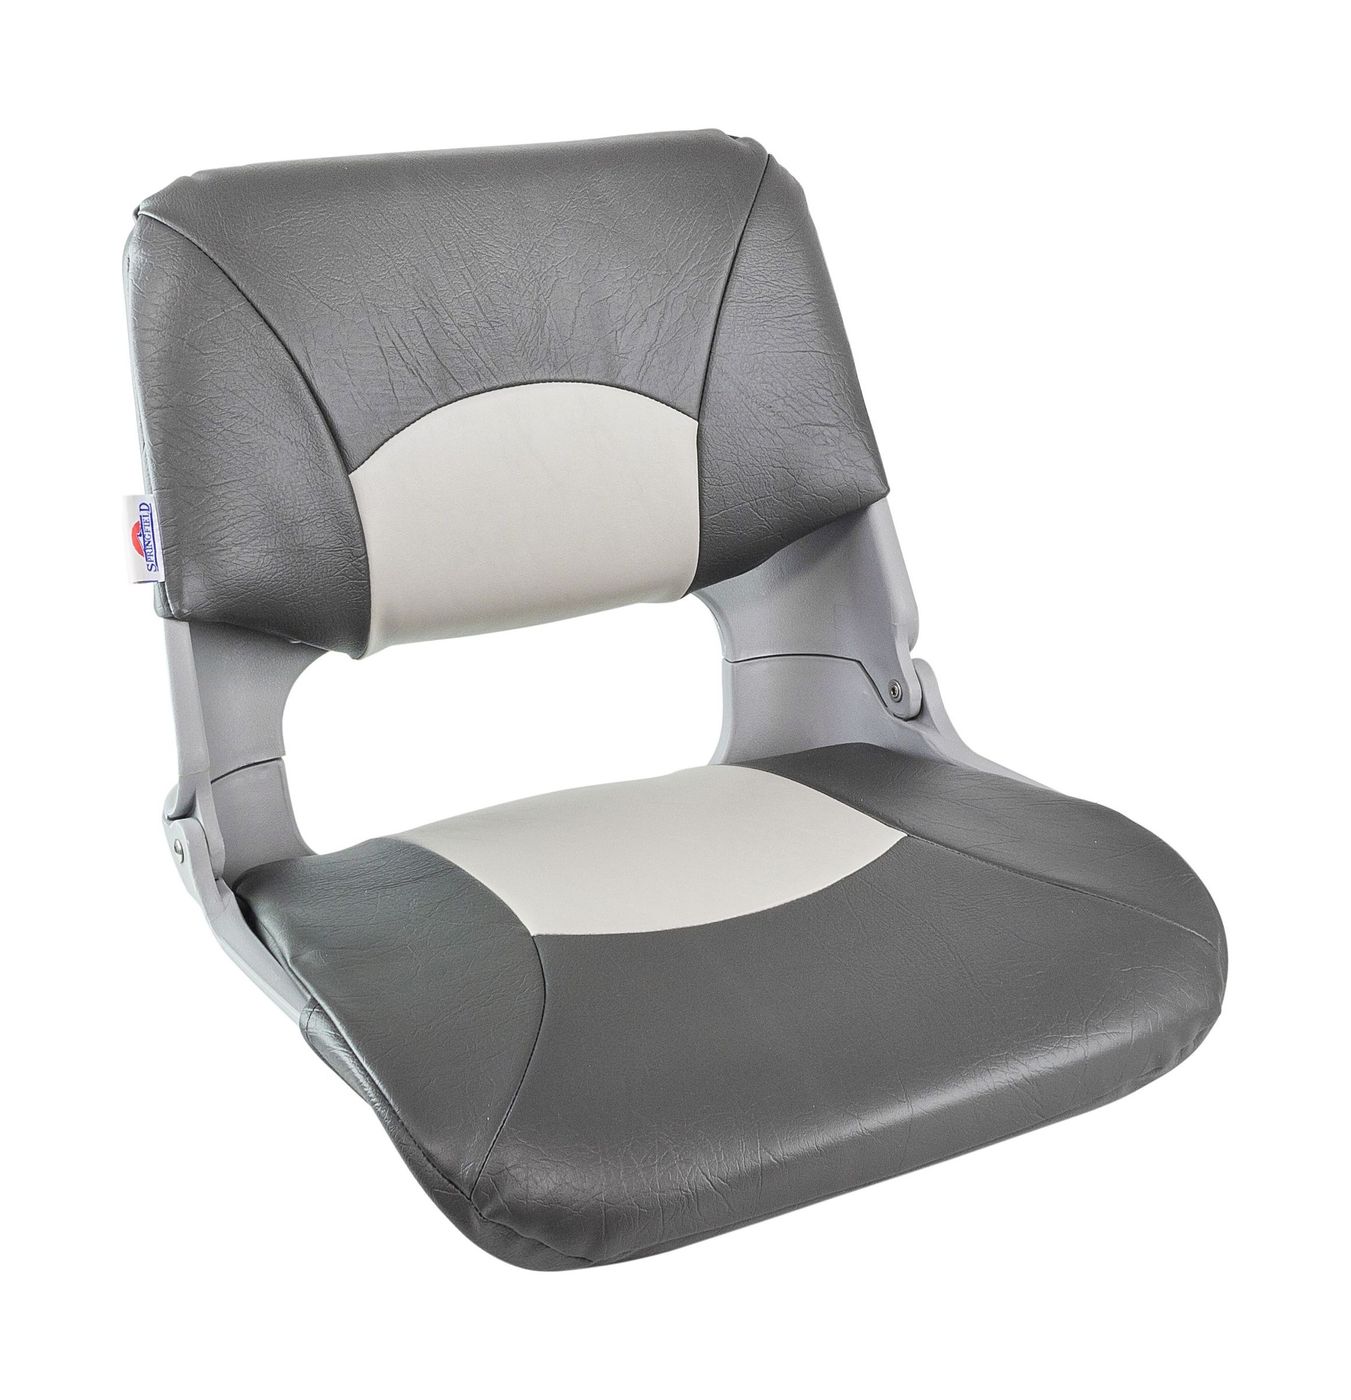 Кресло складное мягкое SKIPPER, серый/темно-серый 1061017 покрывало melissa 200x220 см микрофибра стеганая темно голубой серый